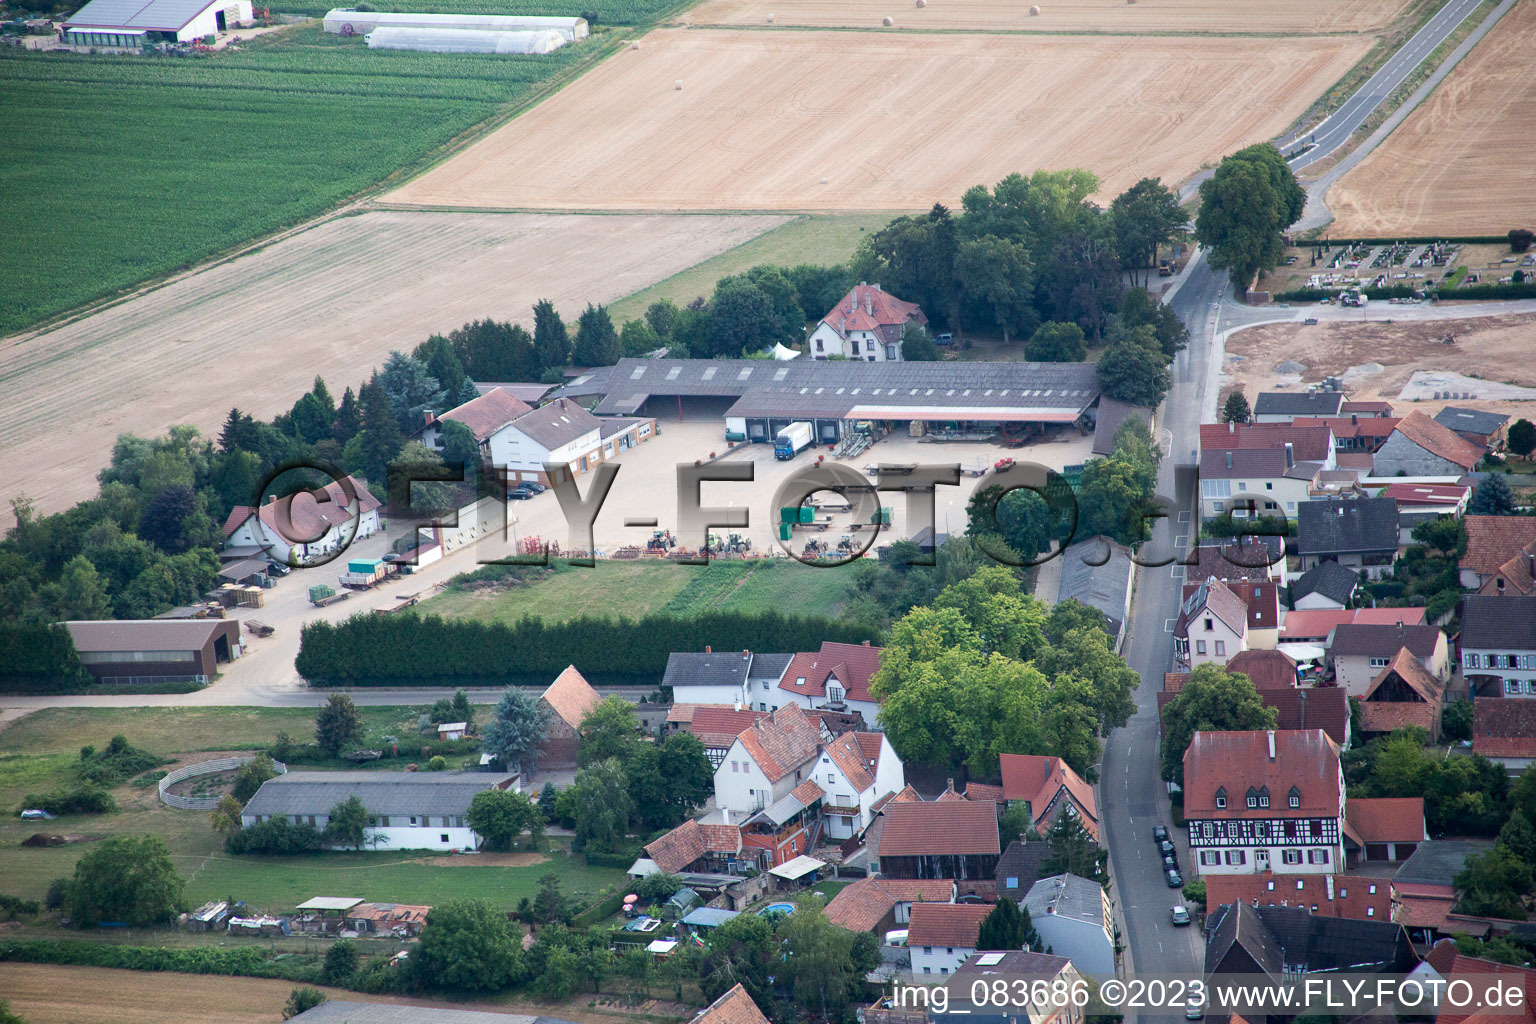 Vue aérienne de Knittelsheim dans le département Rhénanie-Palatinat, Allemagne